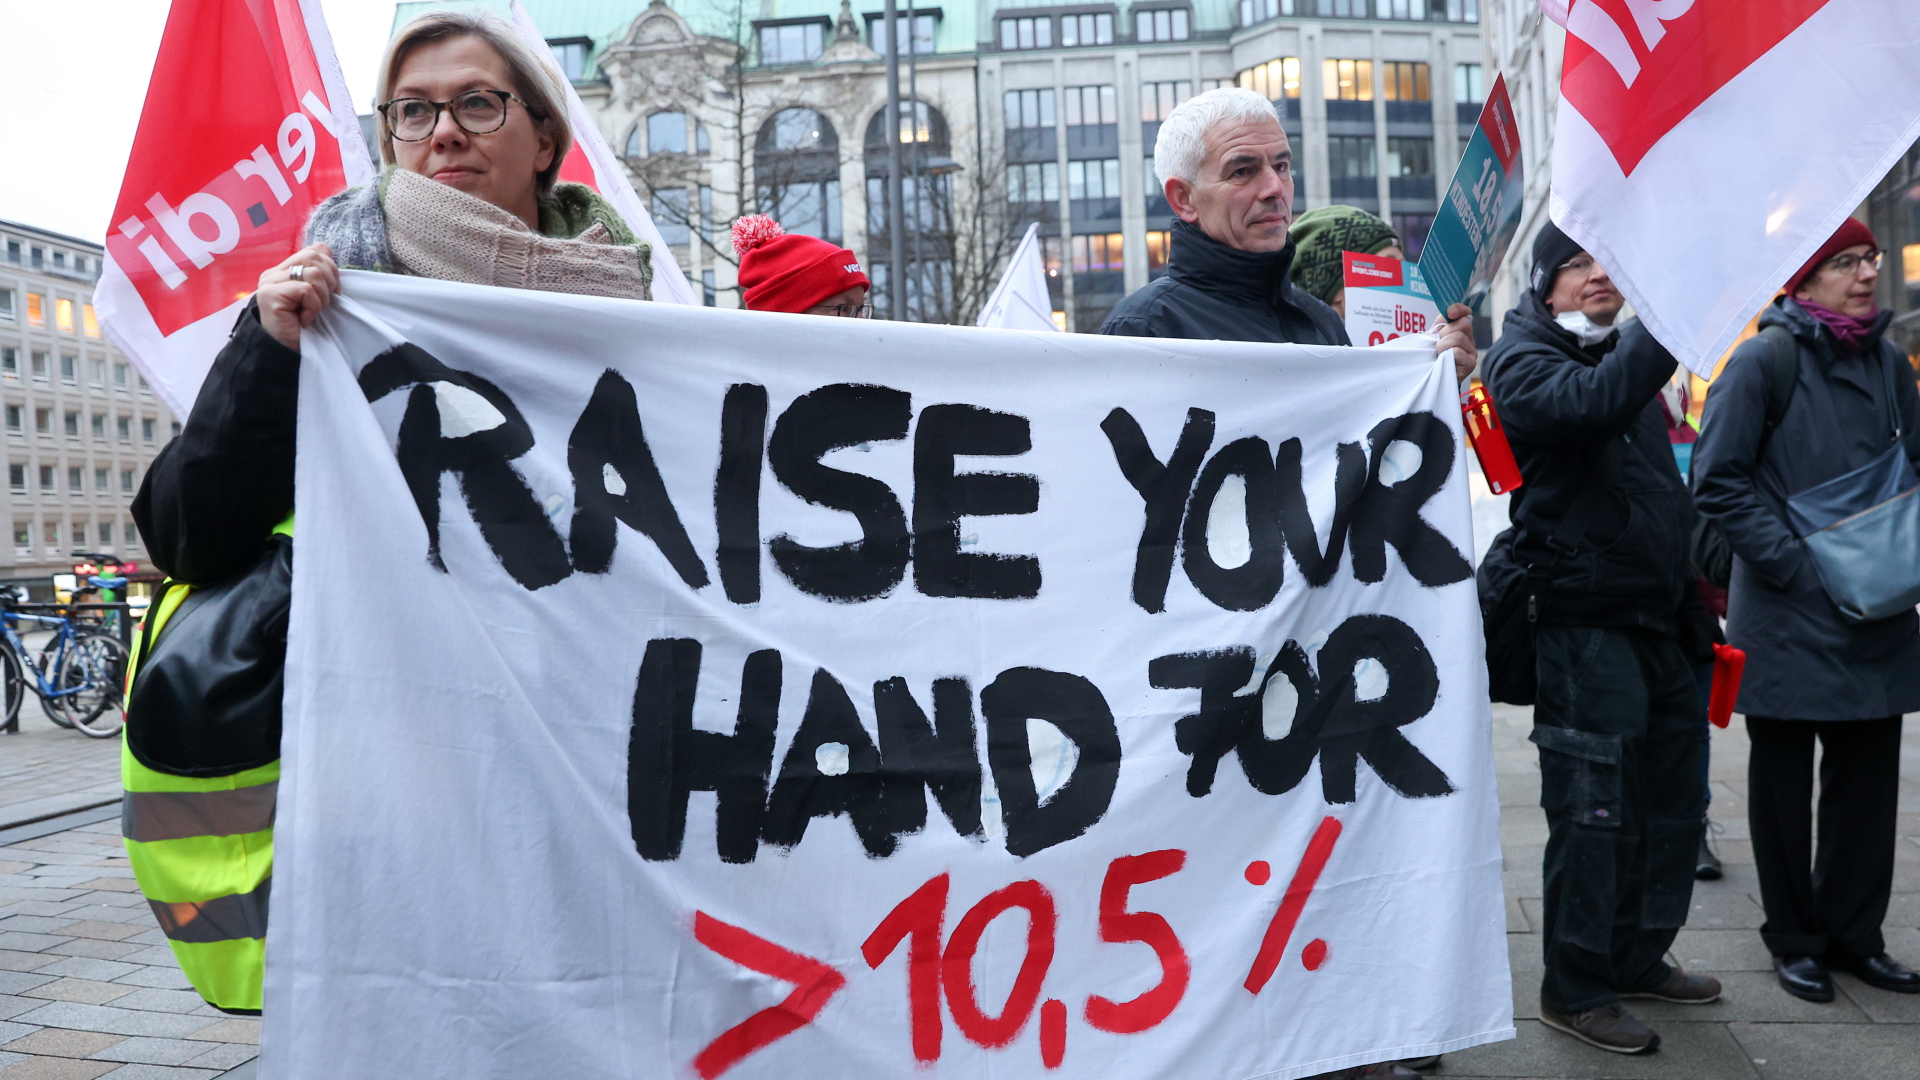 Beschäftigte im öffentlichen Dienst demonstrieren in Hamburg und halten ein Transparent mit der Aufschrift "Raise your Hand for > 10,5 %". | dpa